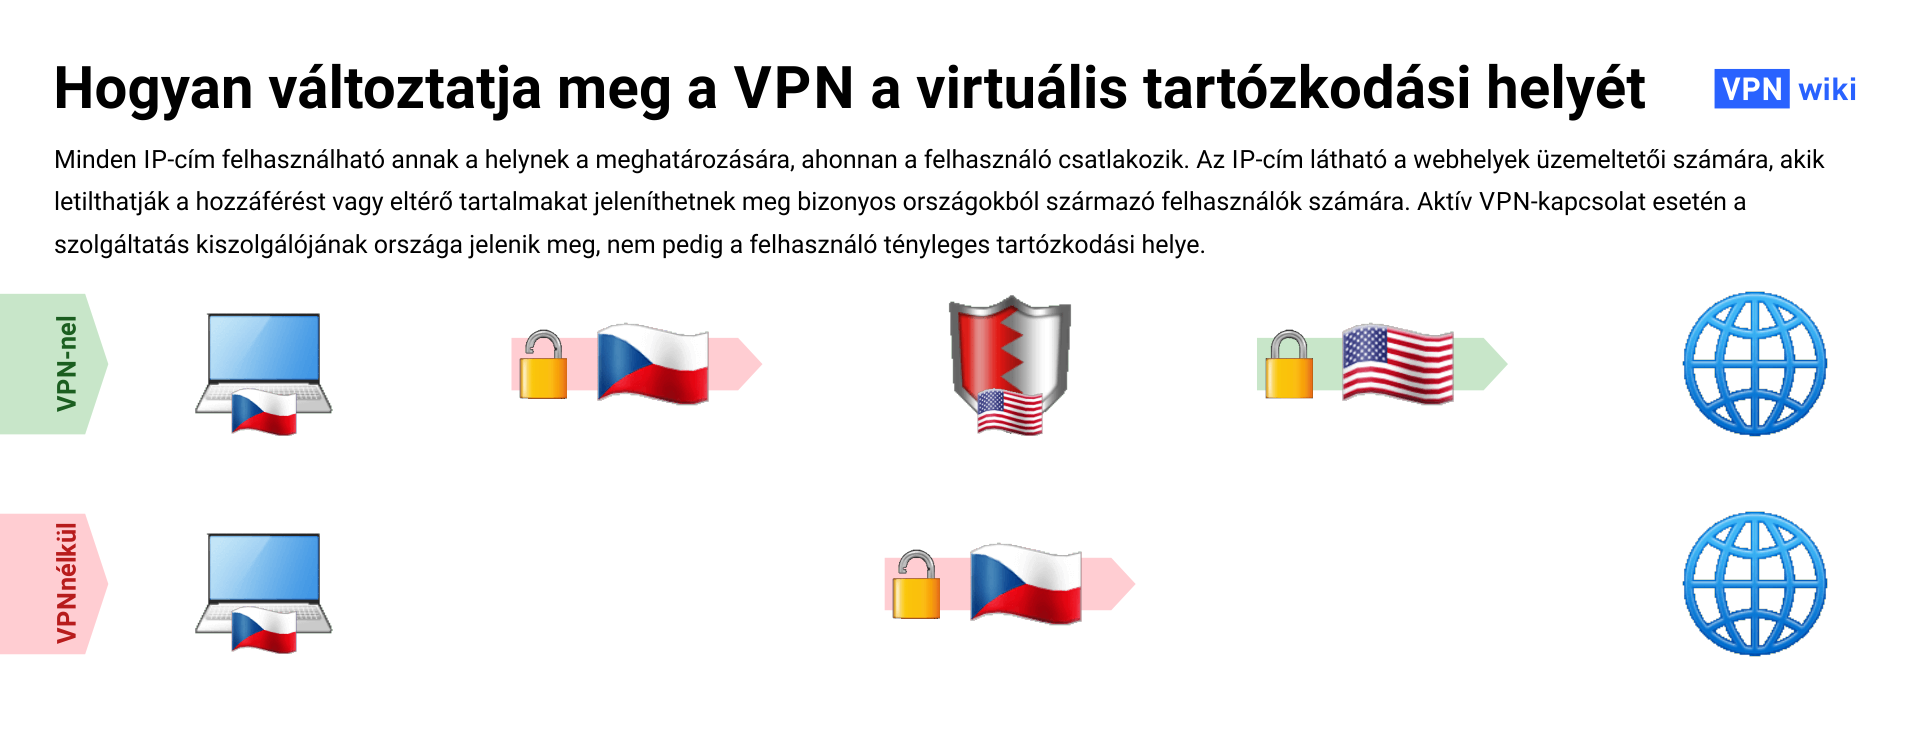 Mi a VPN és hogyan működik? 4 használati példa